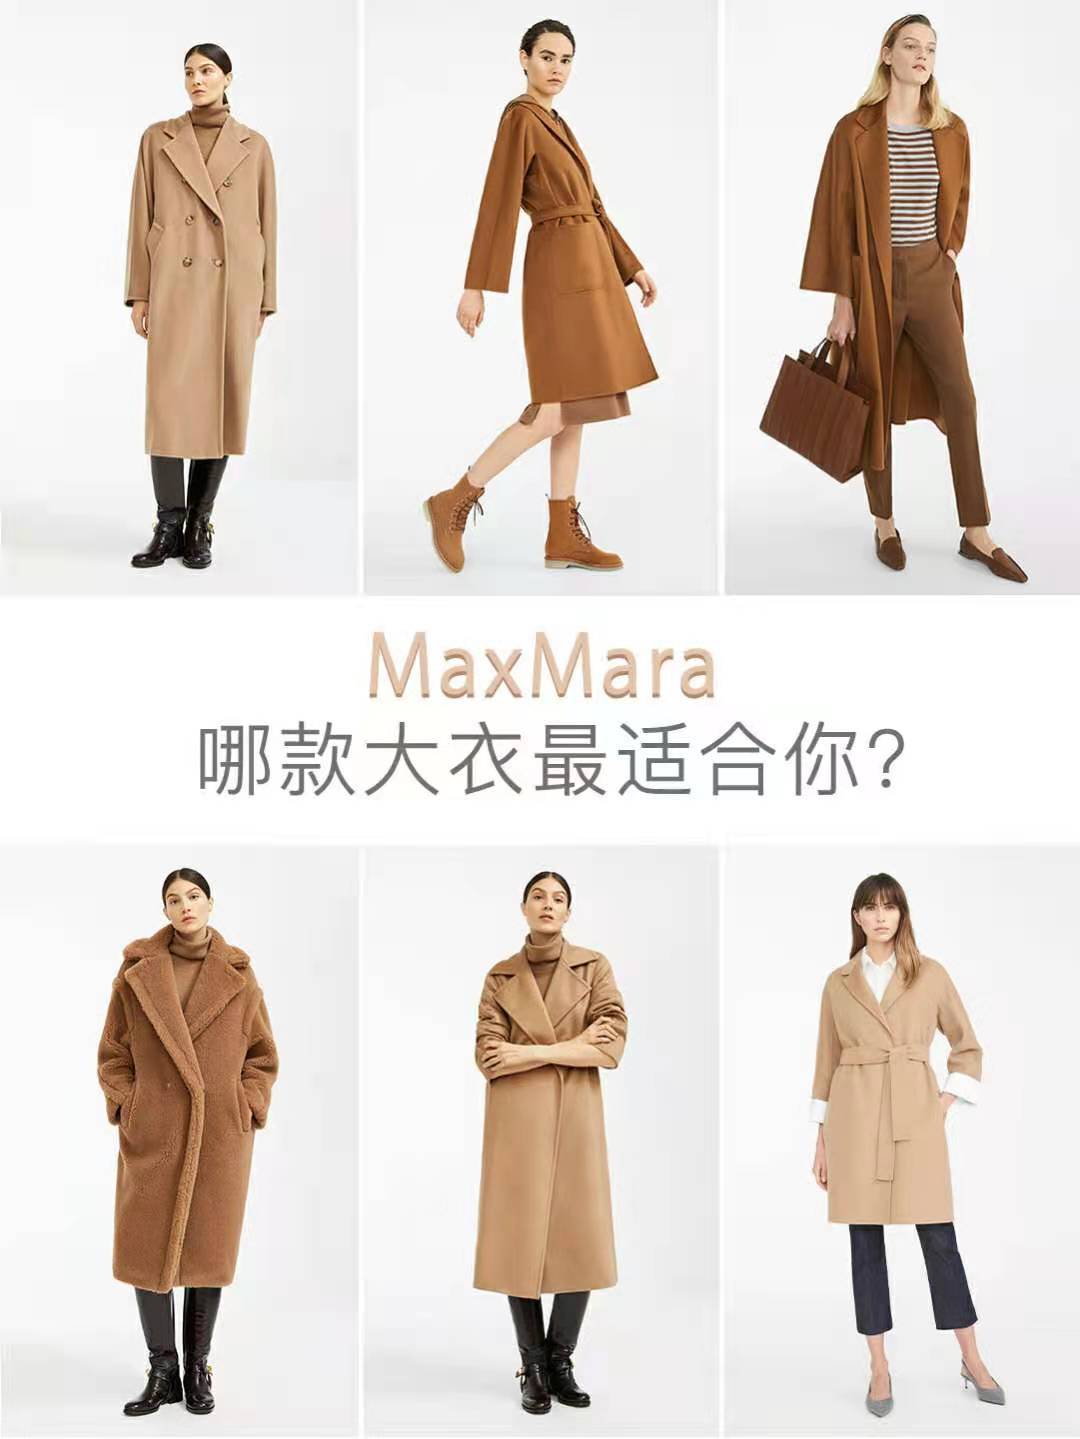 一件大衣就要上万元的MaxMara，到底有什么稀罕的？